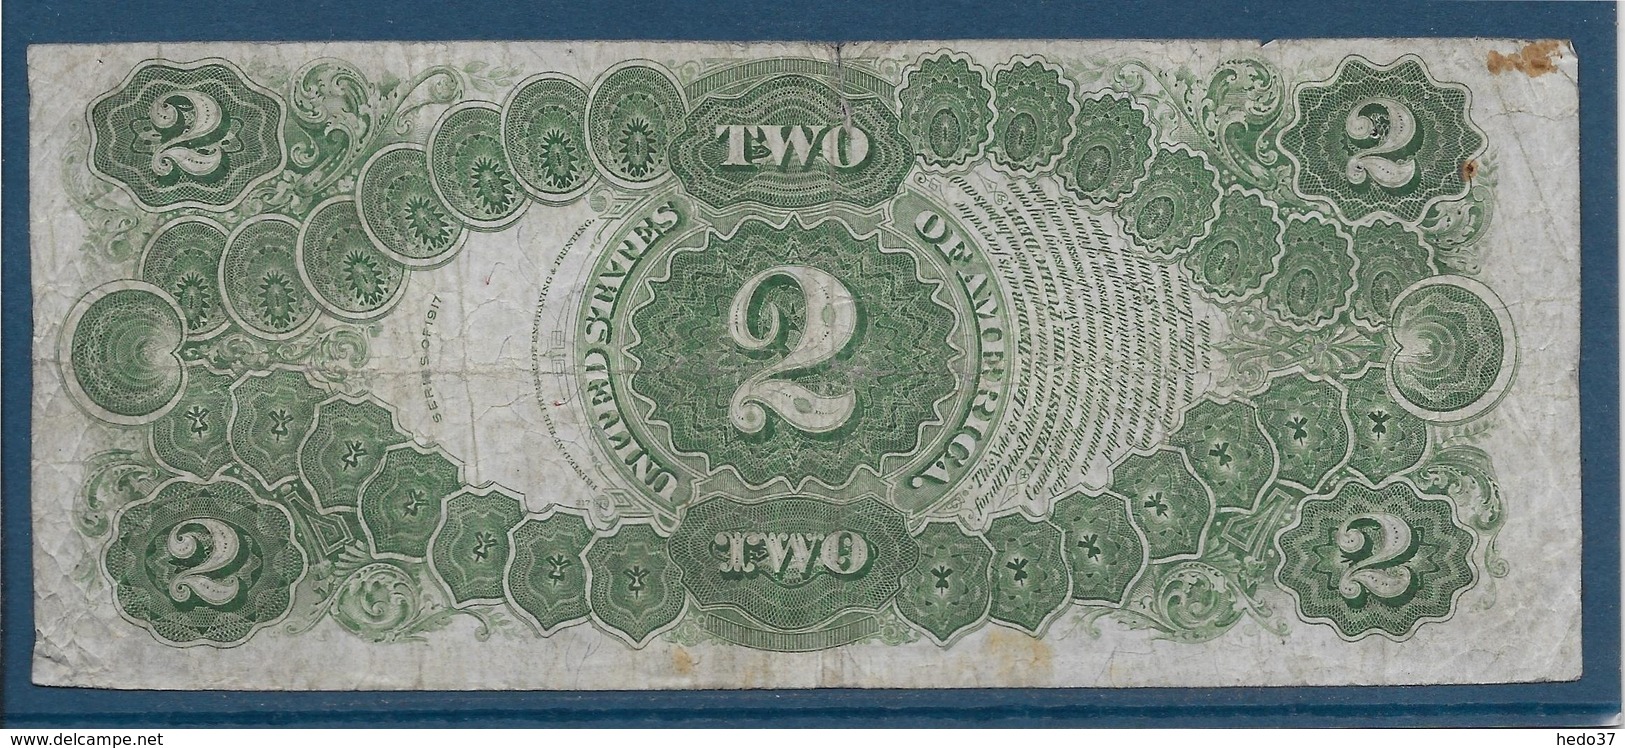 Etats Unis - 2 Dollars - 1917 - Pick N°188 - TB - Biljetten Van De Verenigde Staten (1862-1923)